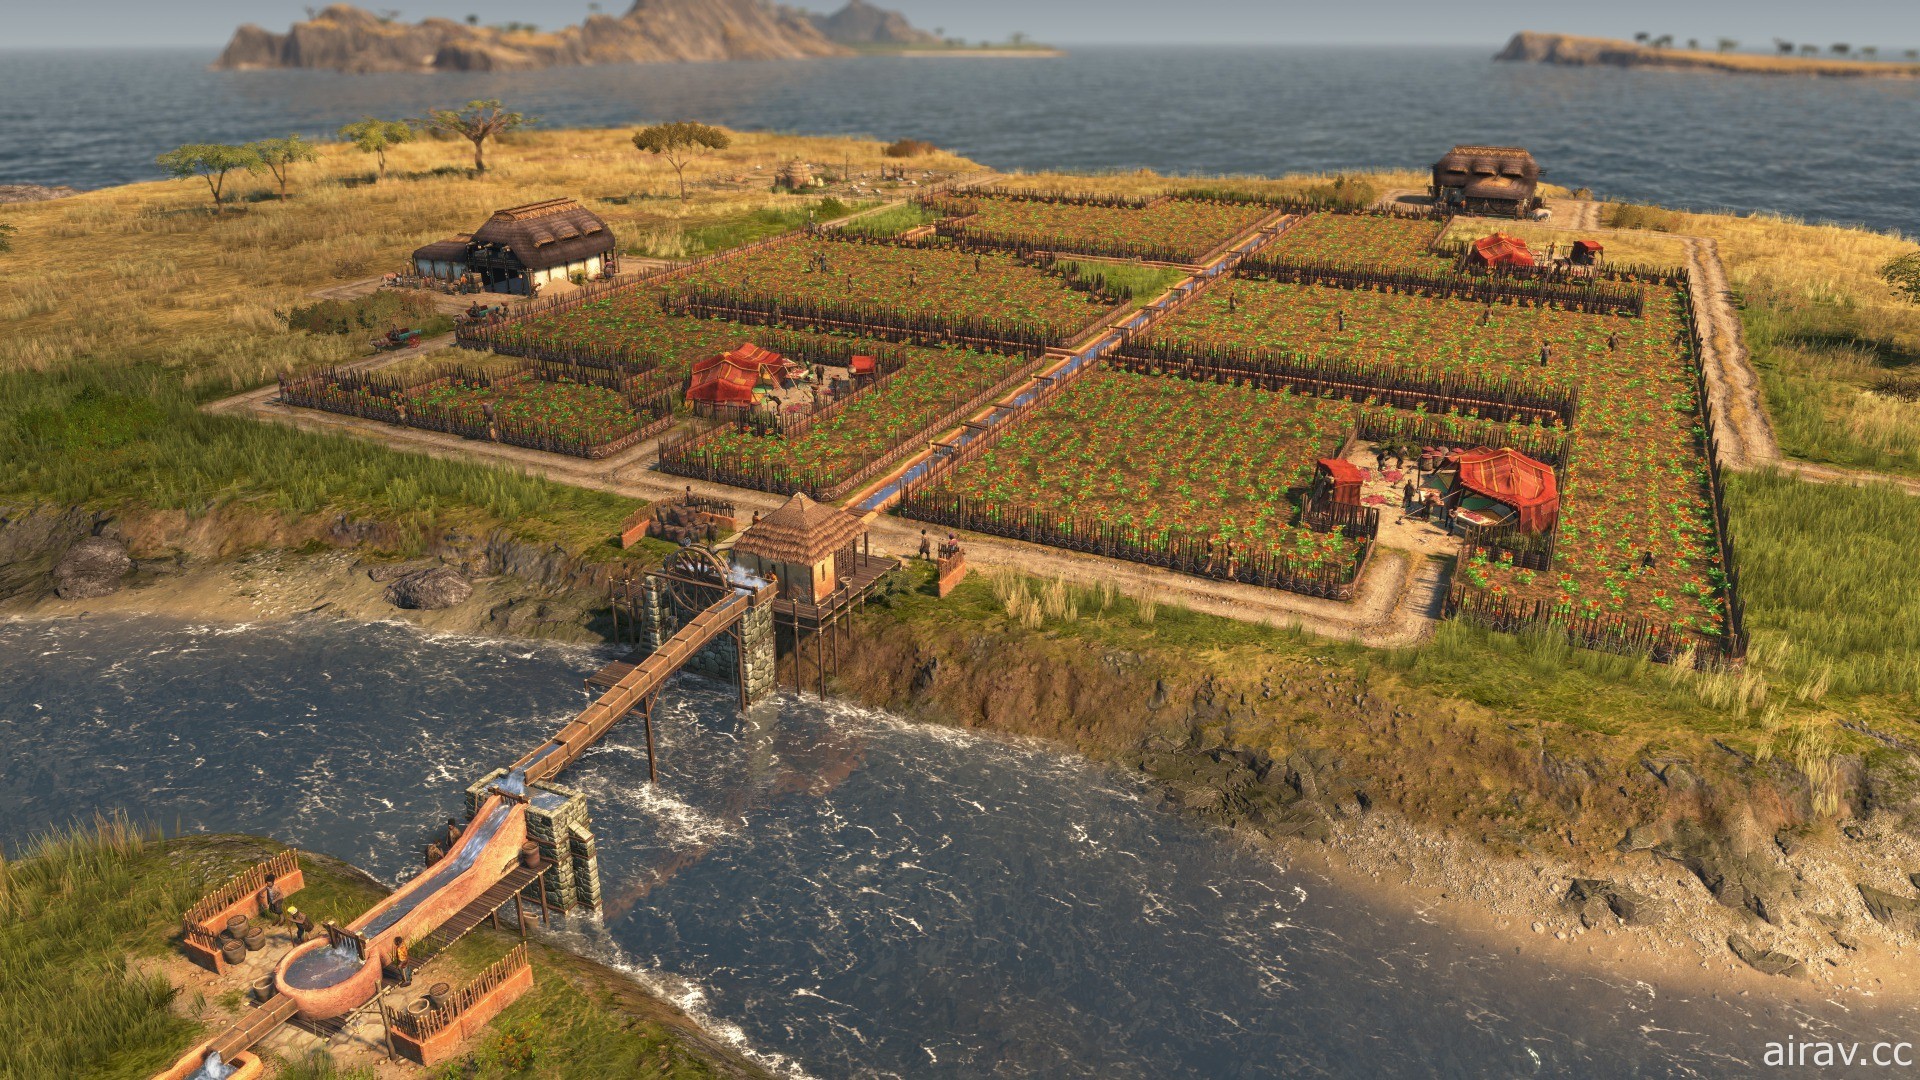 《美麗新世界 1800》新 DLC「獅子大地」已推出 前進新地區「安貝沙」體驗灌溉系統等